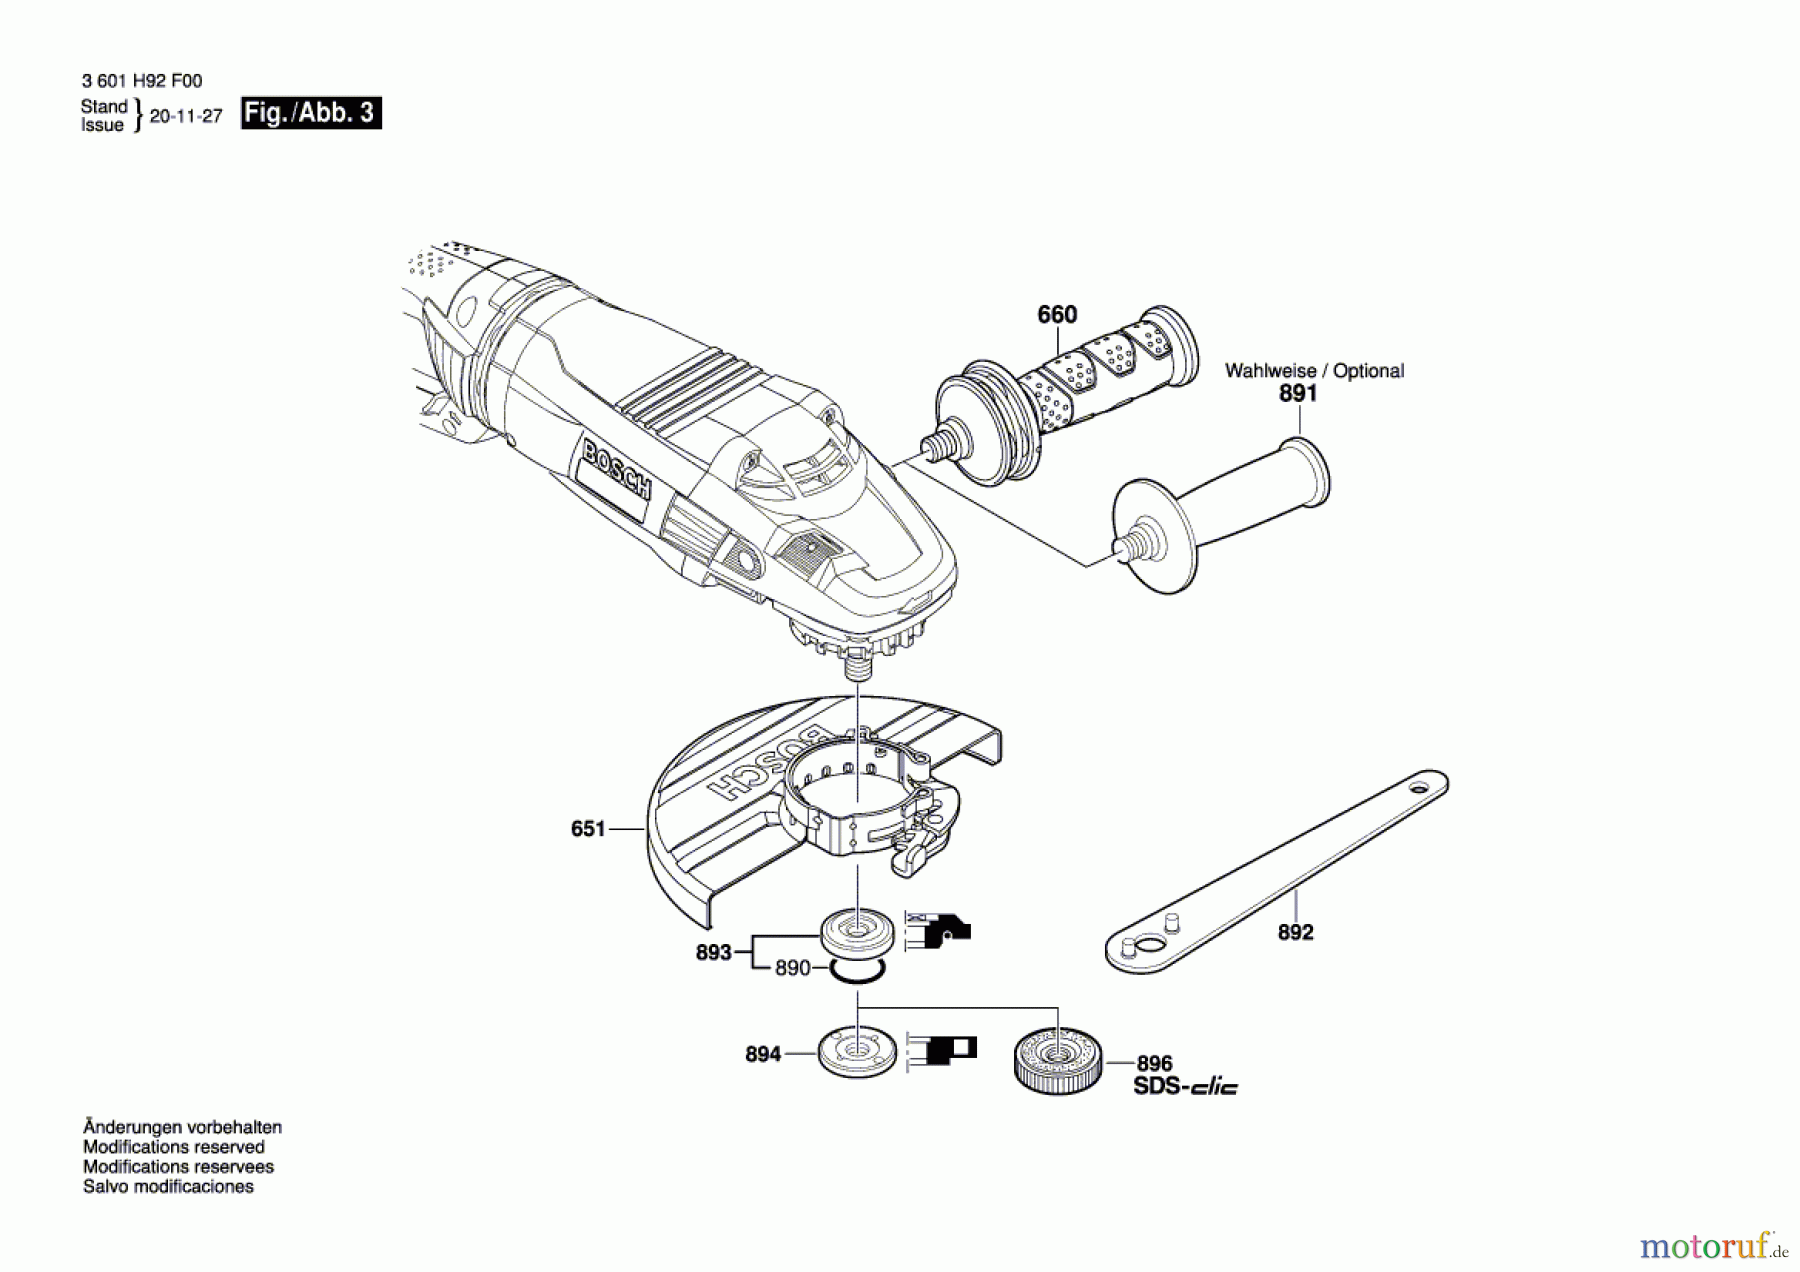  Bosch Werkzeug Winkelschleifer GWS 24-230 LVI Seite 3